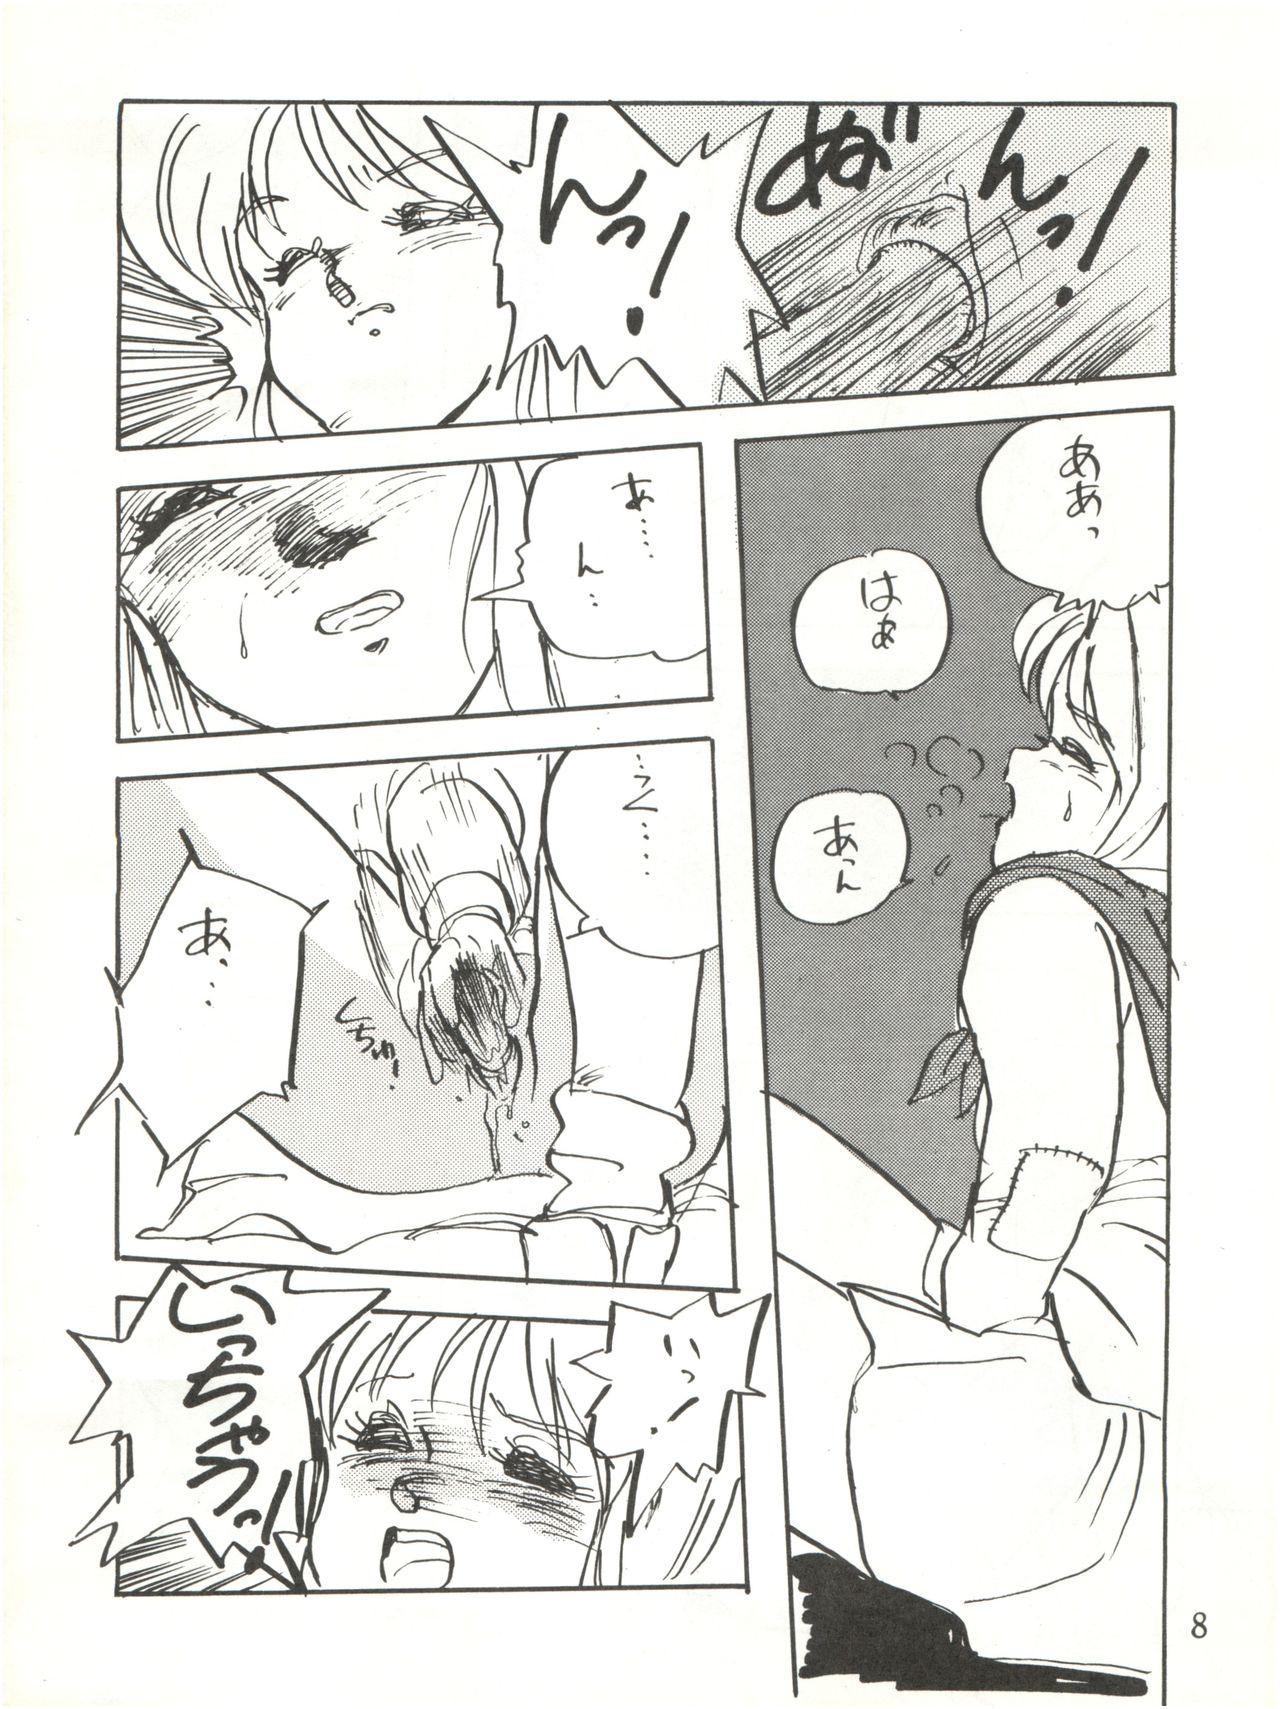 Caught Waku Waku Elpeo Land PII - Gundam zz Hood - Page 8